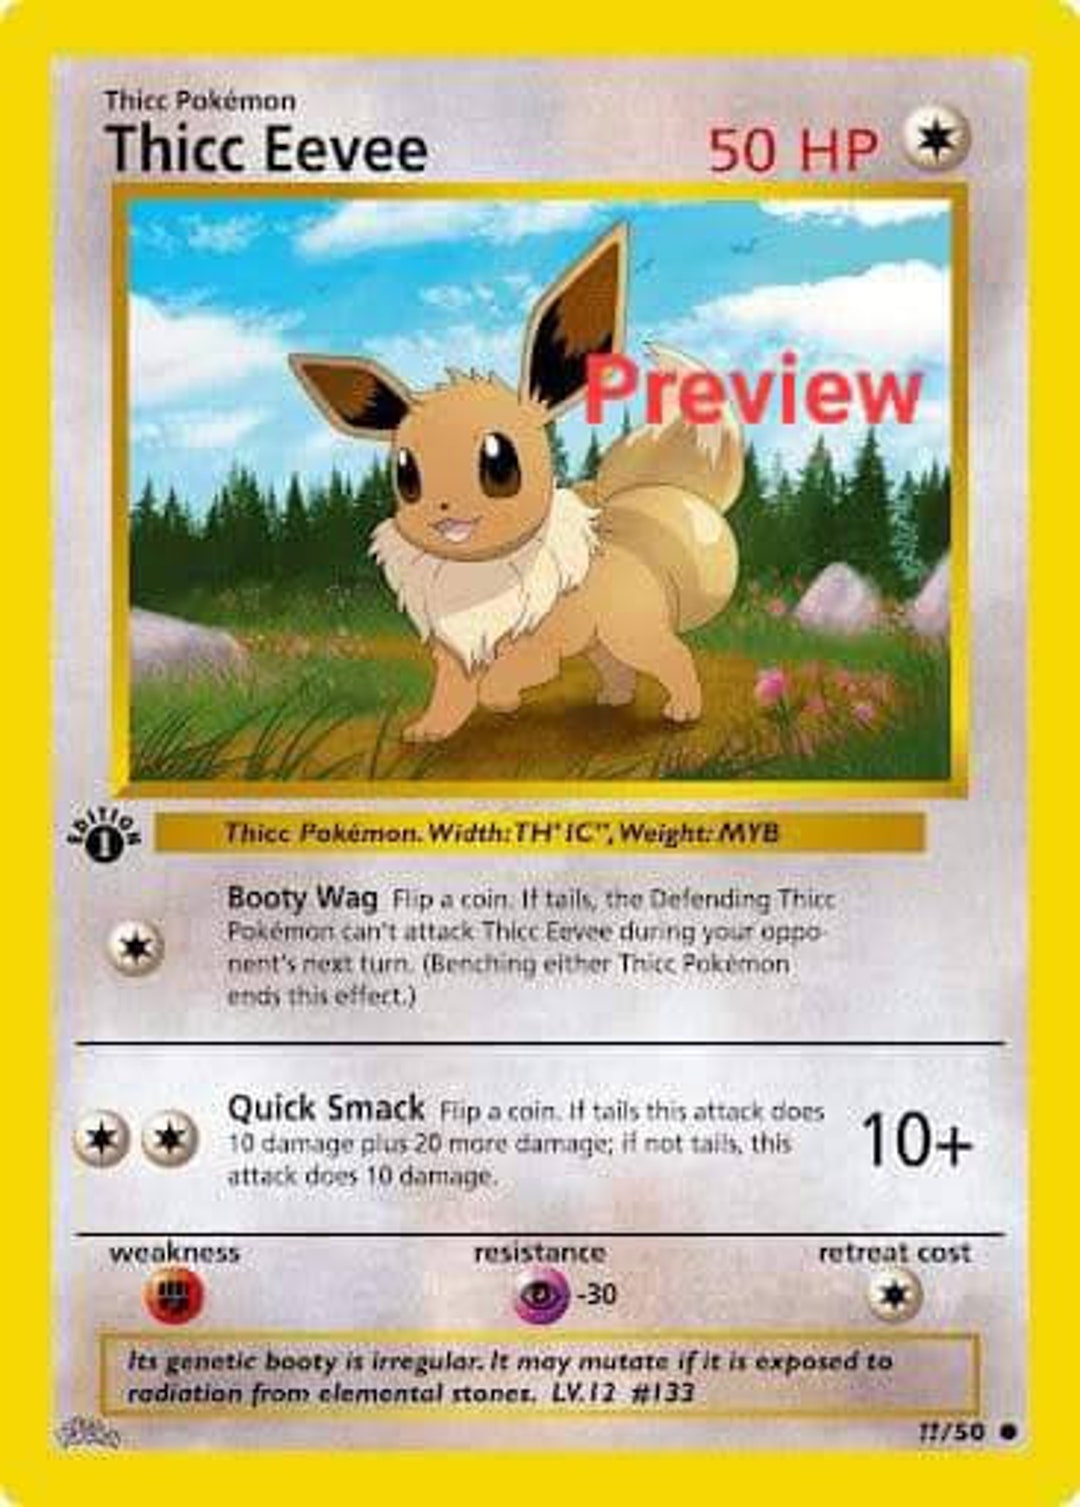 Palkia dialga giratina vstar gx ex vmax v Pokémon card Orica holographic  Pikachu Pokemon custom made